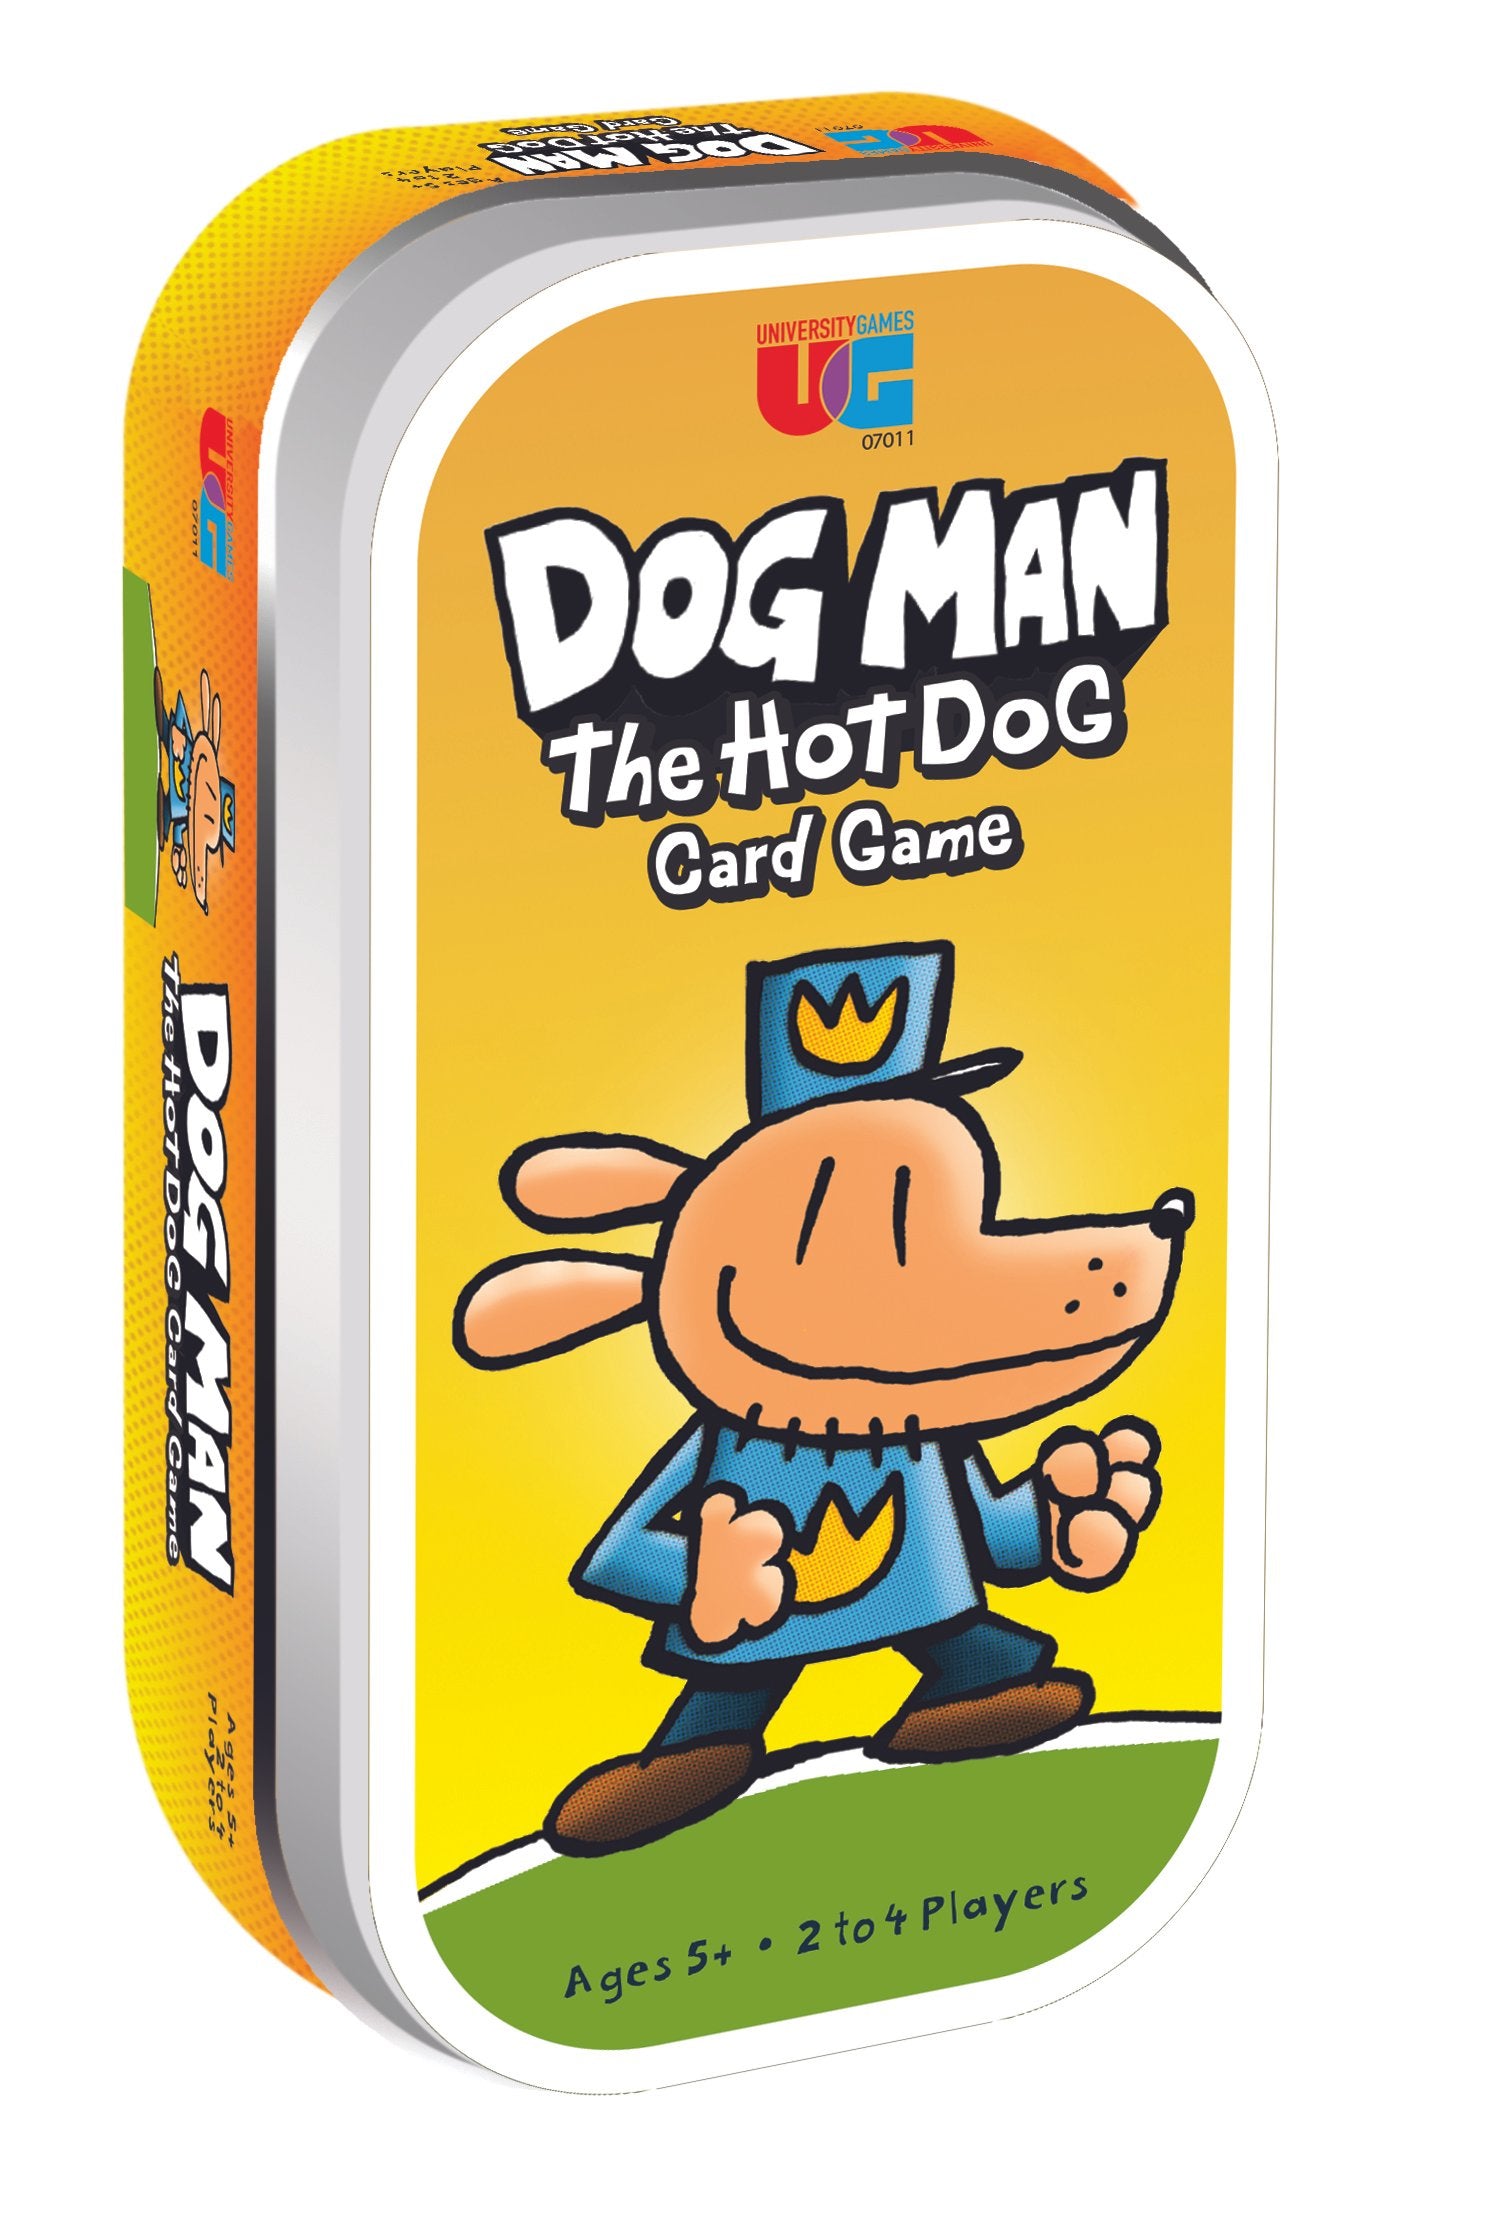 UG Dog Man - The Hot Dog Tin The Toy Wagon